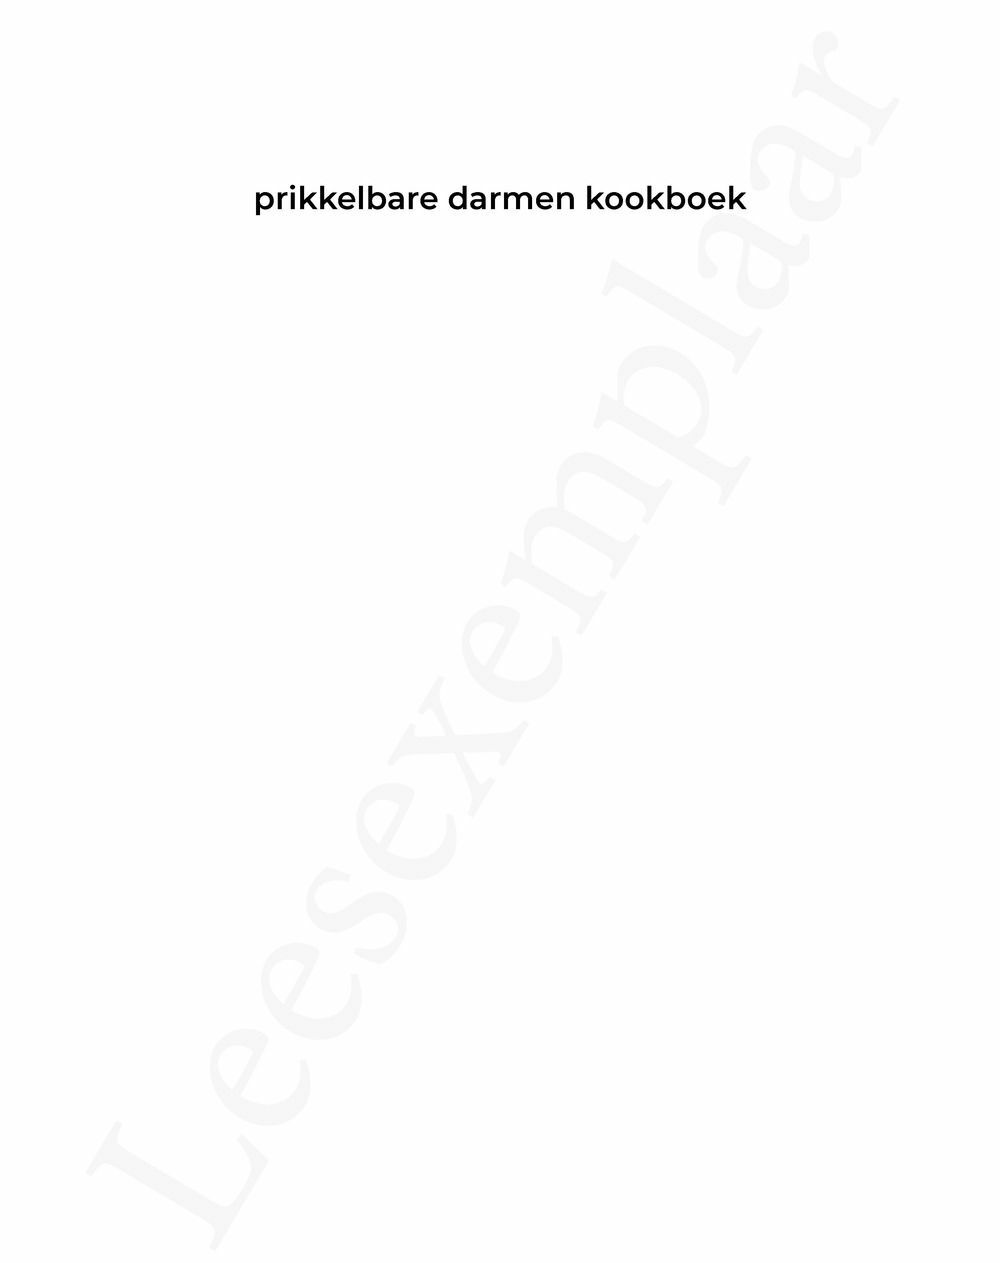 Preview: Prikkelbare darmen kookboek